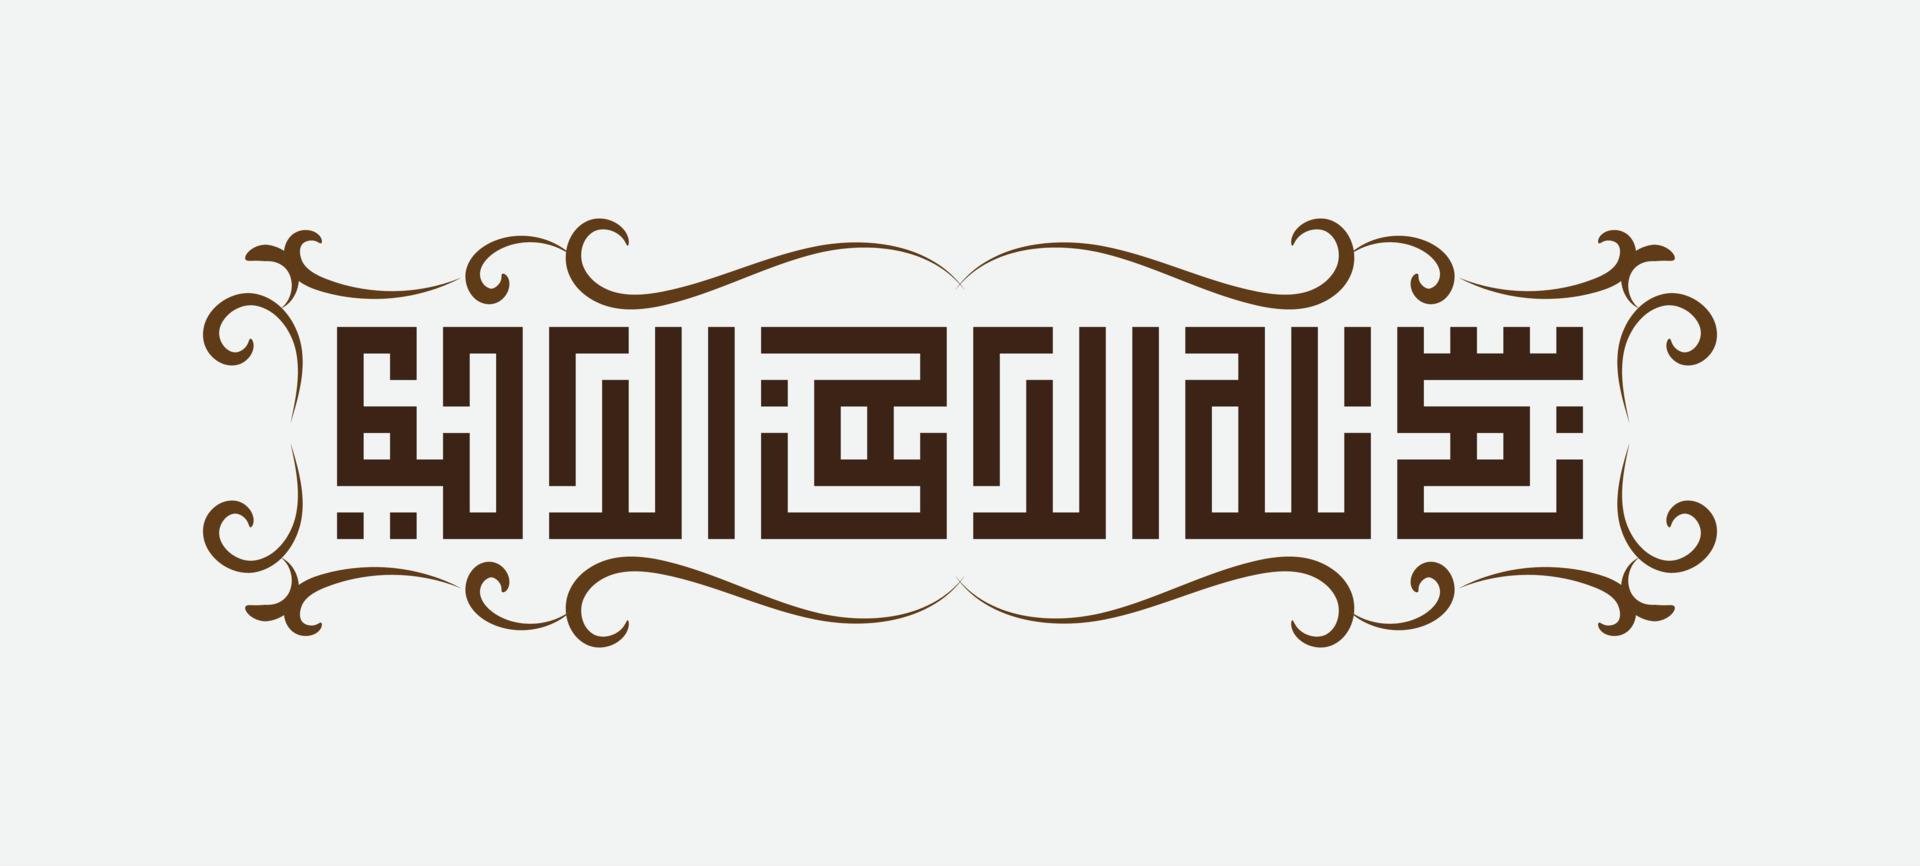 bismillah escrito em caligrafia islâmica ou árabe com moldura vintage. significado de bismillah, em nome de allah, o compassivo, o misericordioso vetor